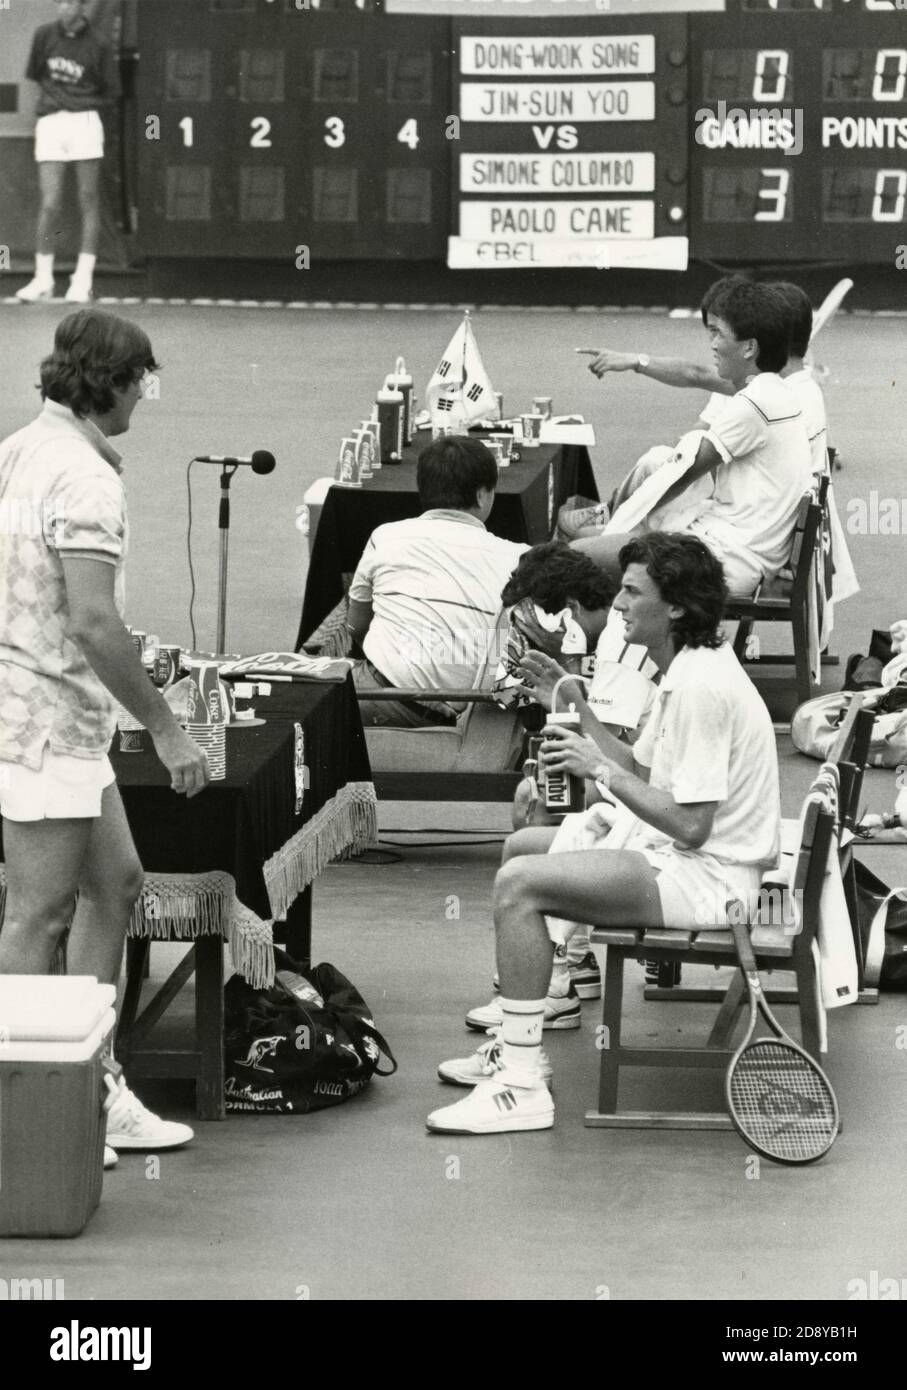 Das italienische Team Simone Colombo und Paolo Canè sowie das koreanische Team Dong-wook Song und Jin-Sung Yoo bei der Davis-Cup-Playoff, Seul, Korea 1987 Stockfoto